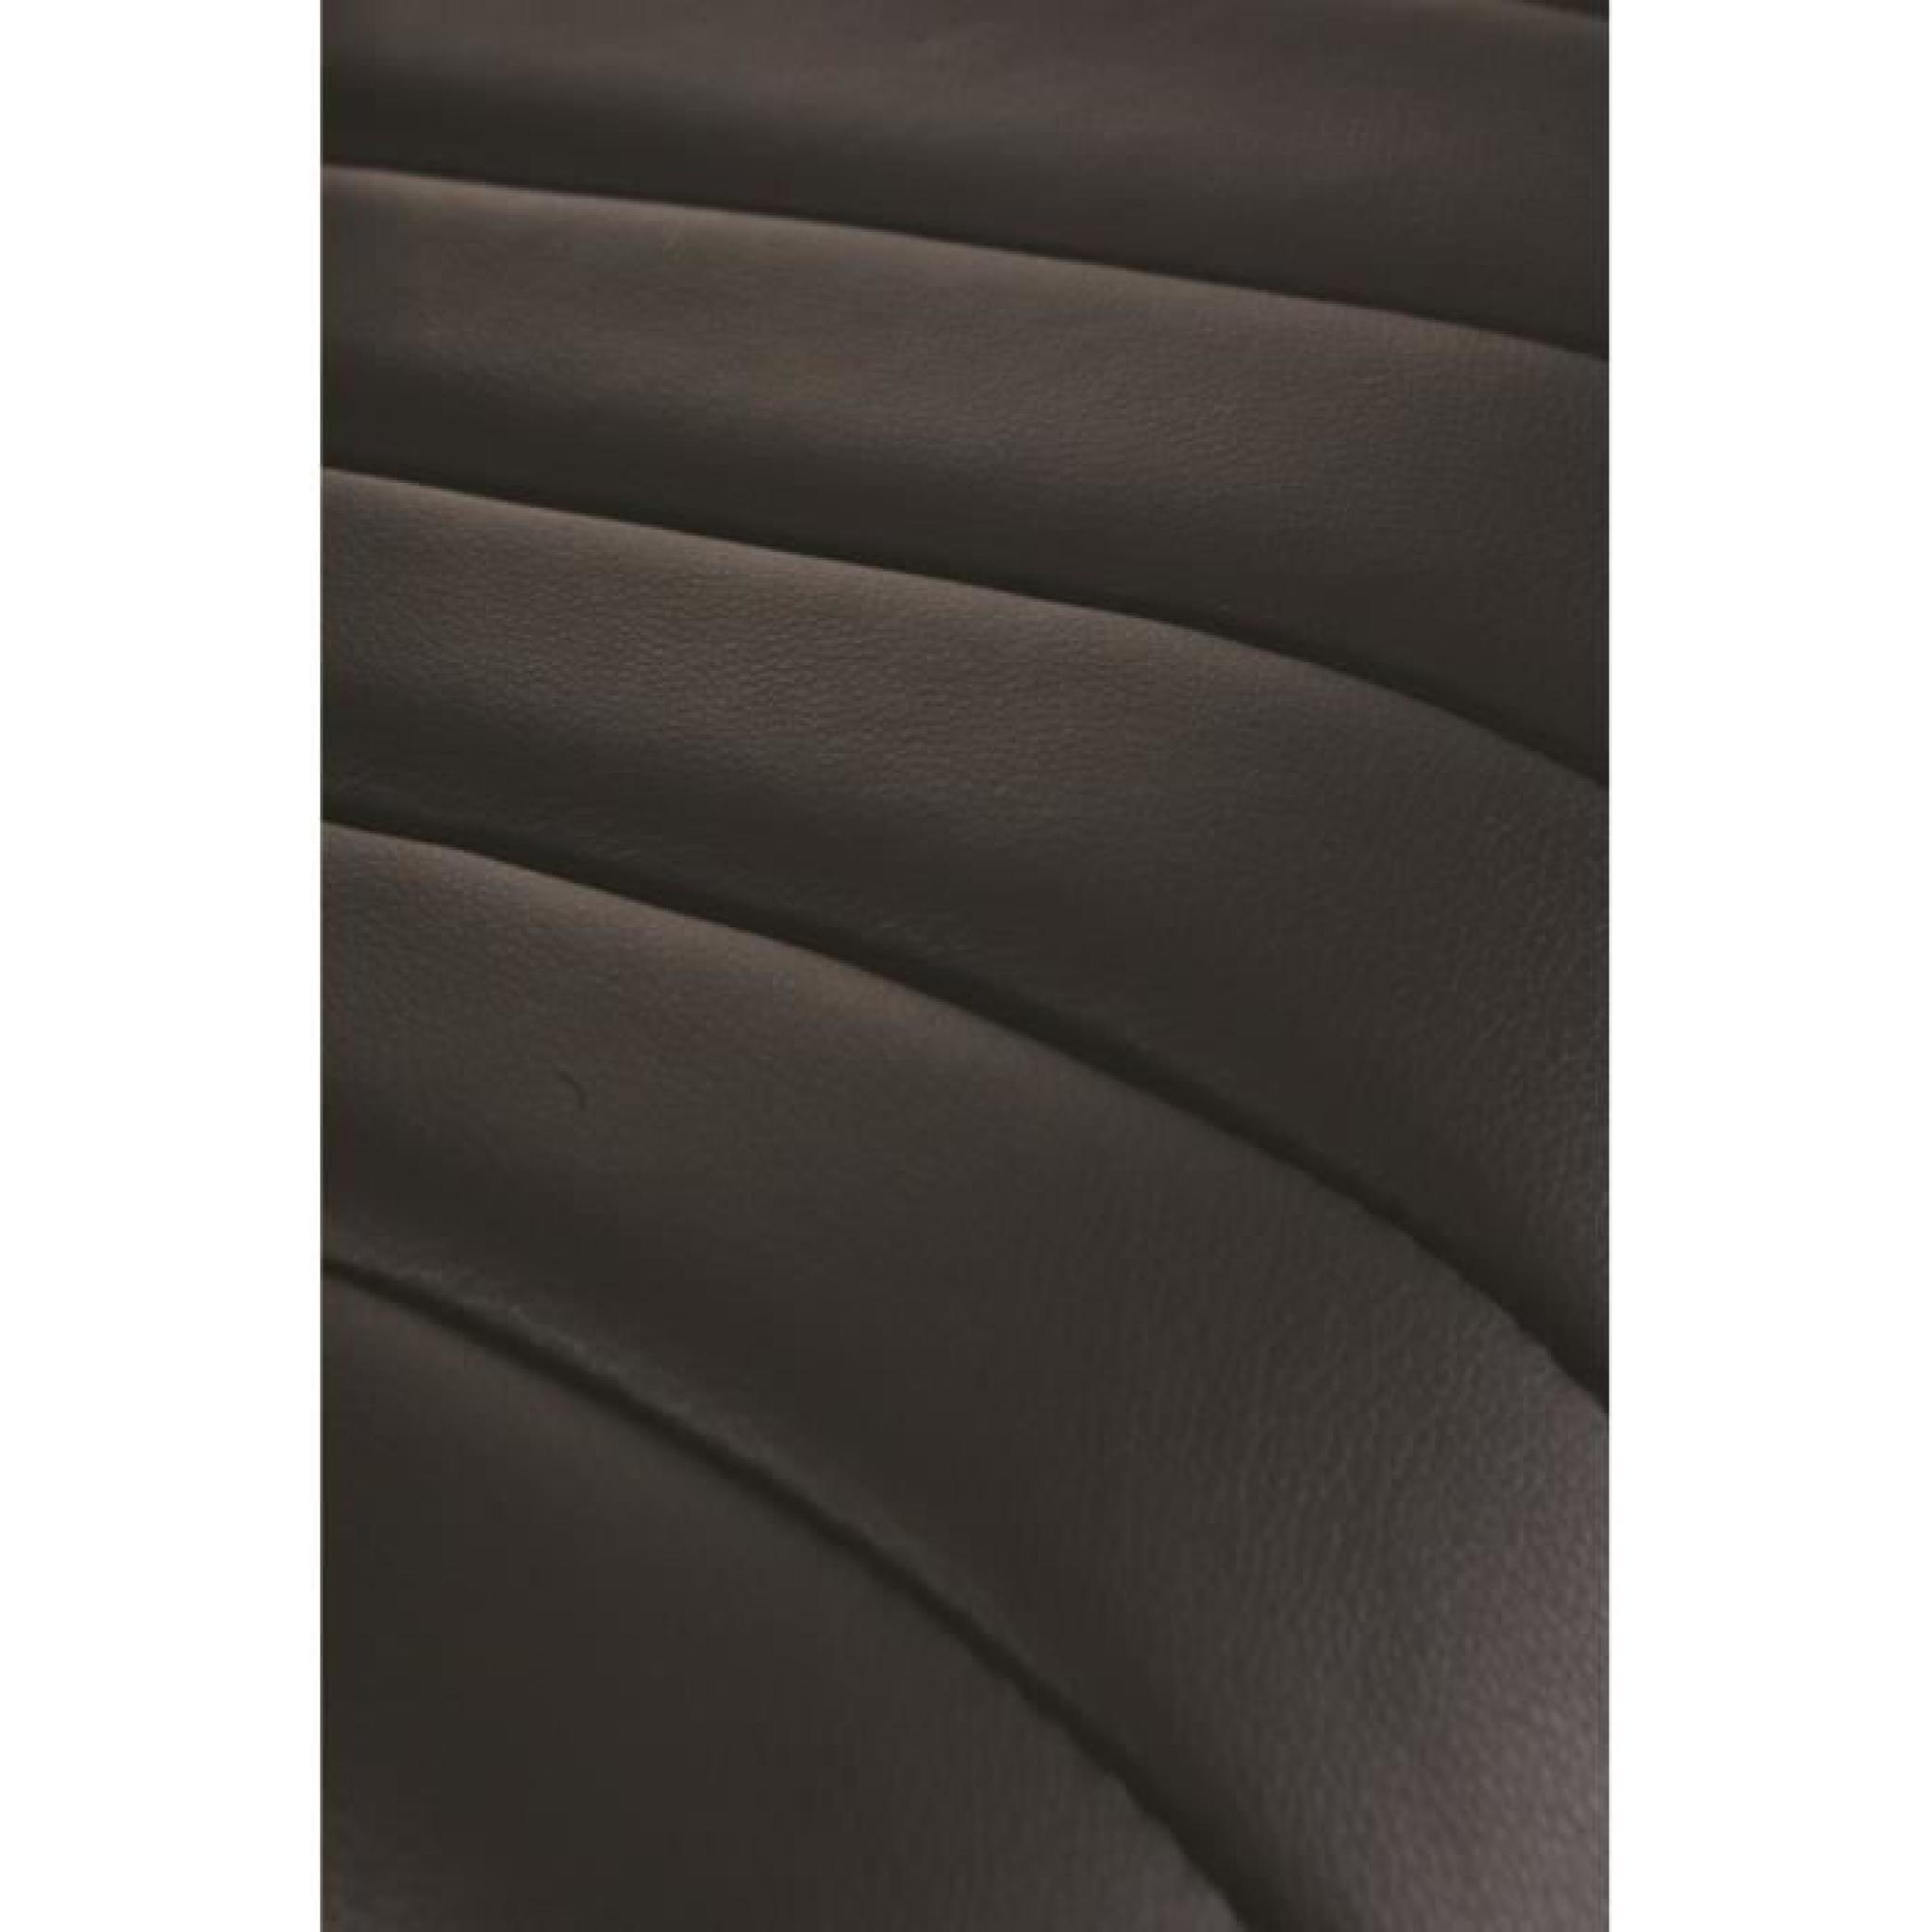 Tabouret de bar, Coloris noir, 45 x 90 x 44 cm pas cher